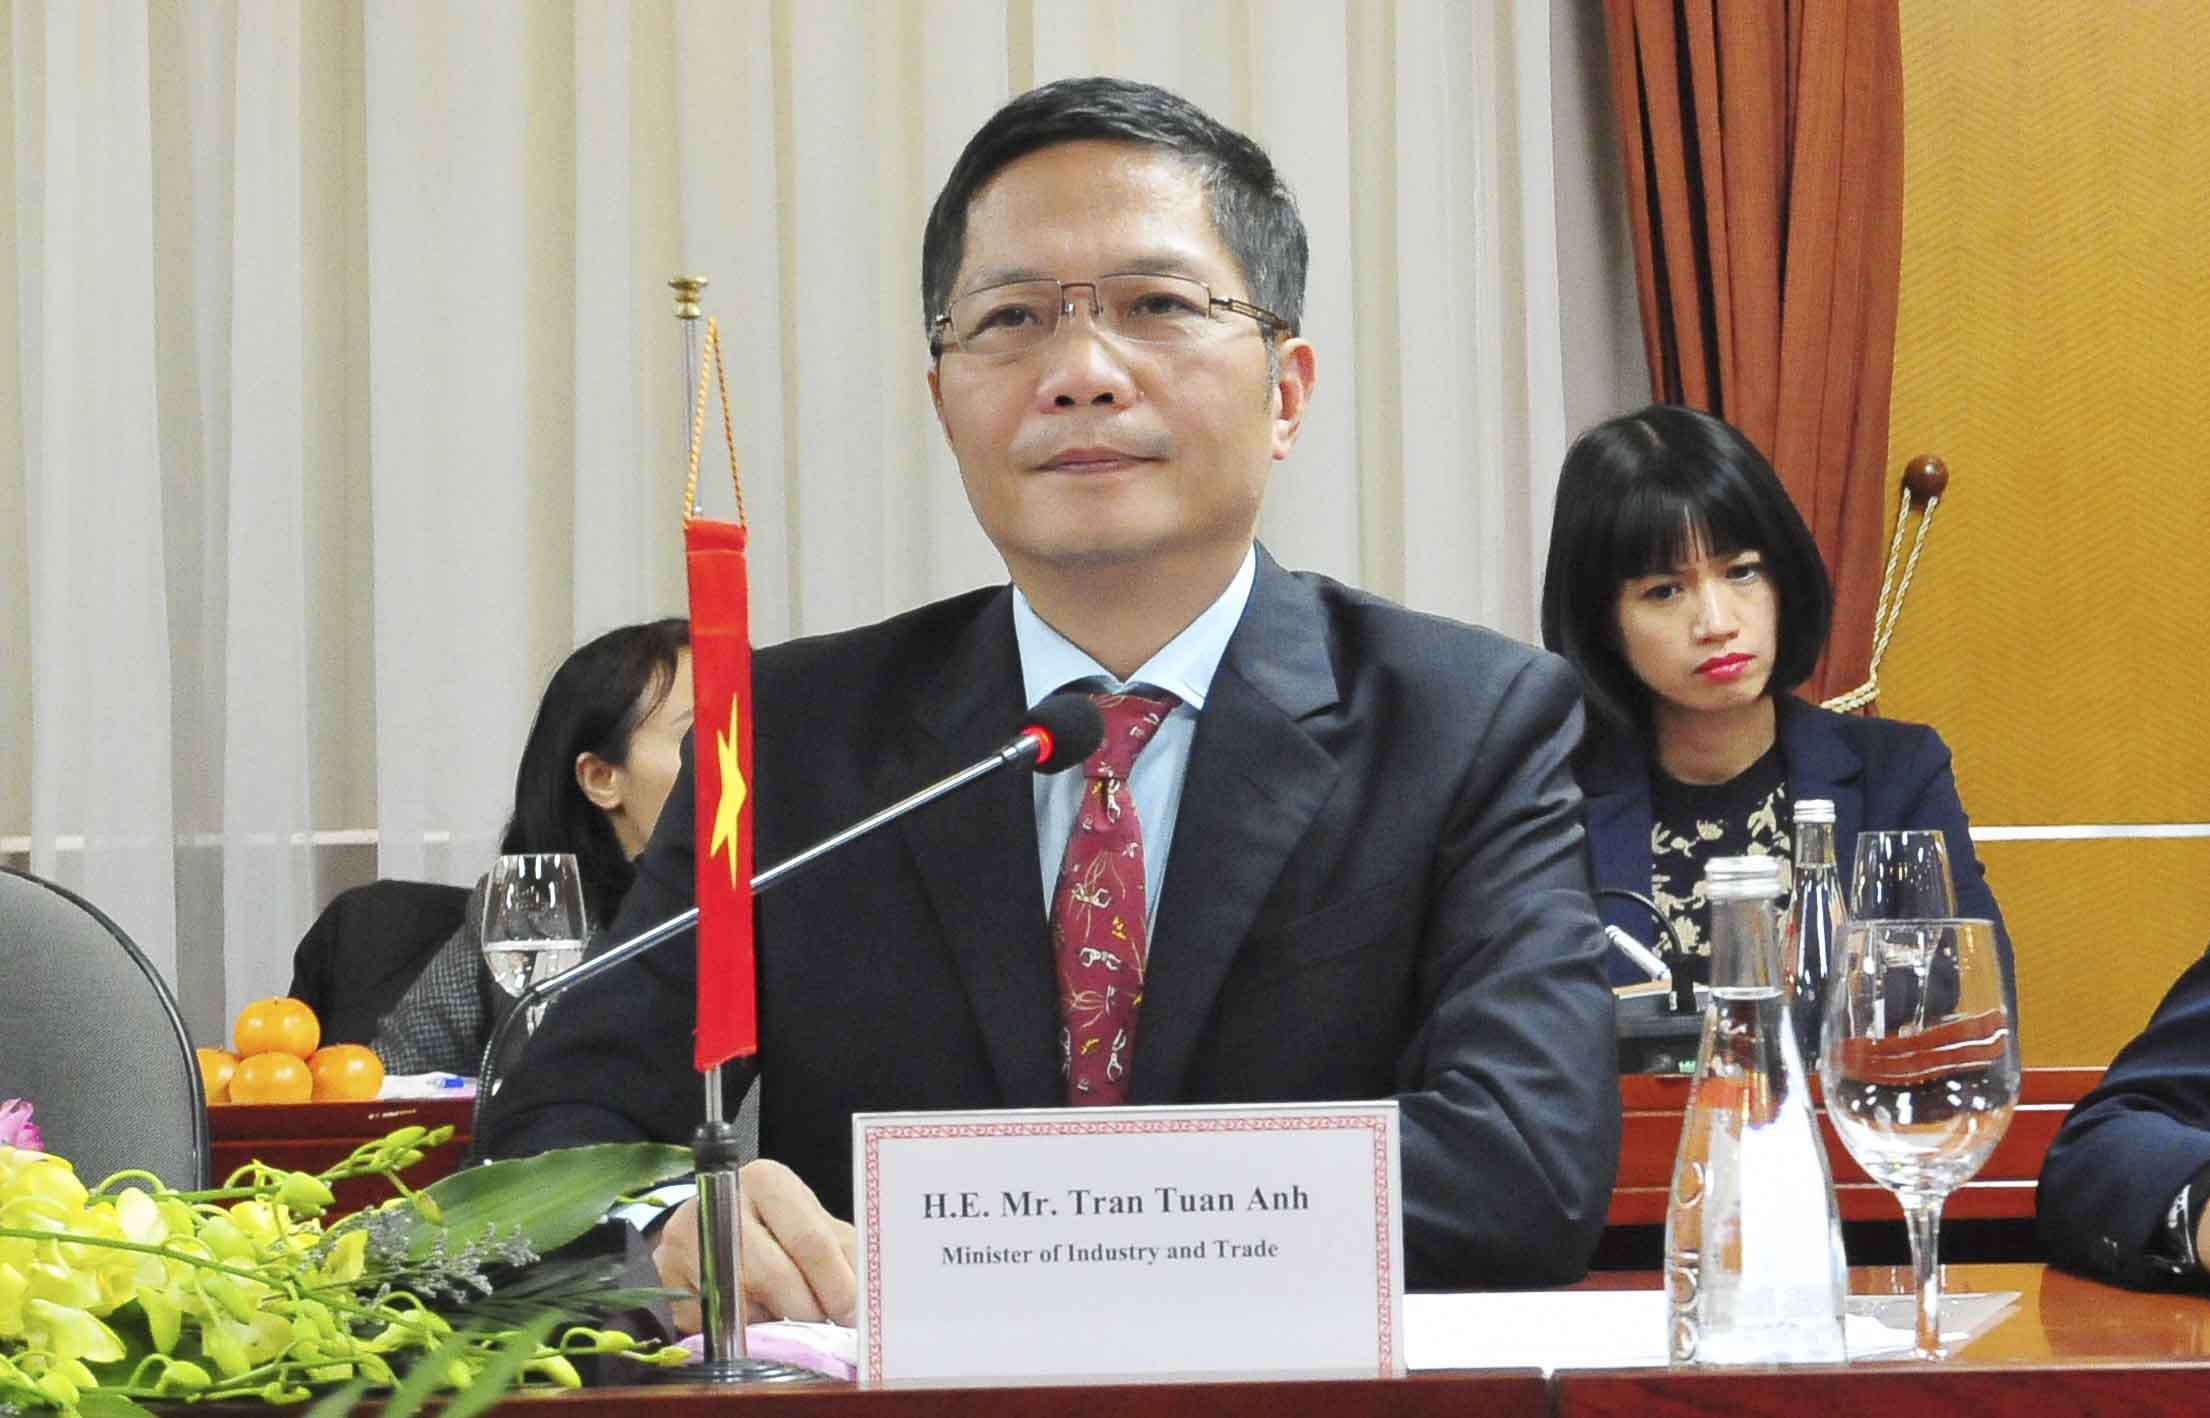 Hiệp định Thương mại tự do giữa Việt Nam và Liên minh Kinh tế Á-Âu